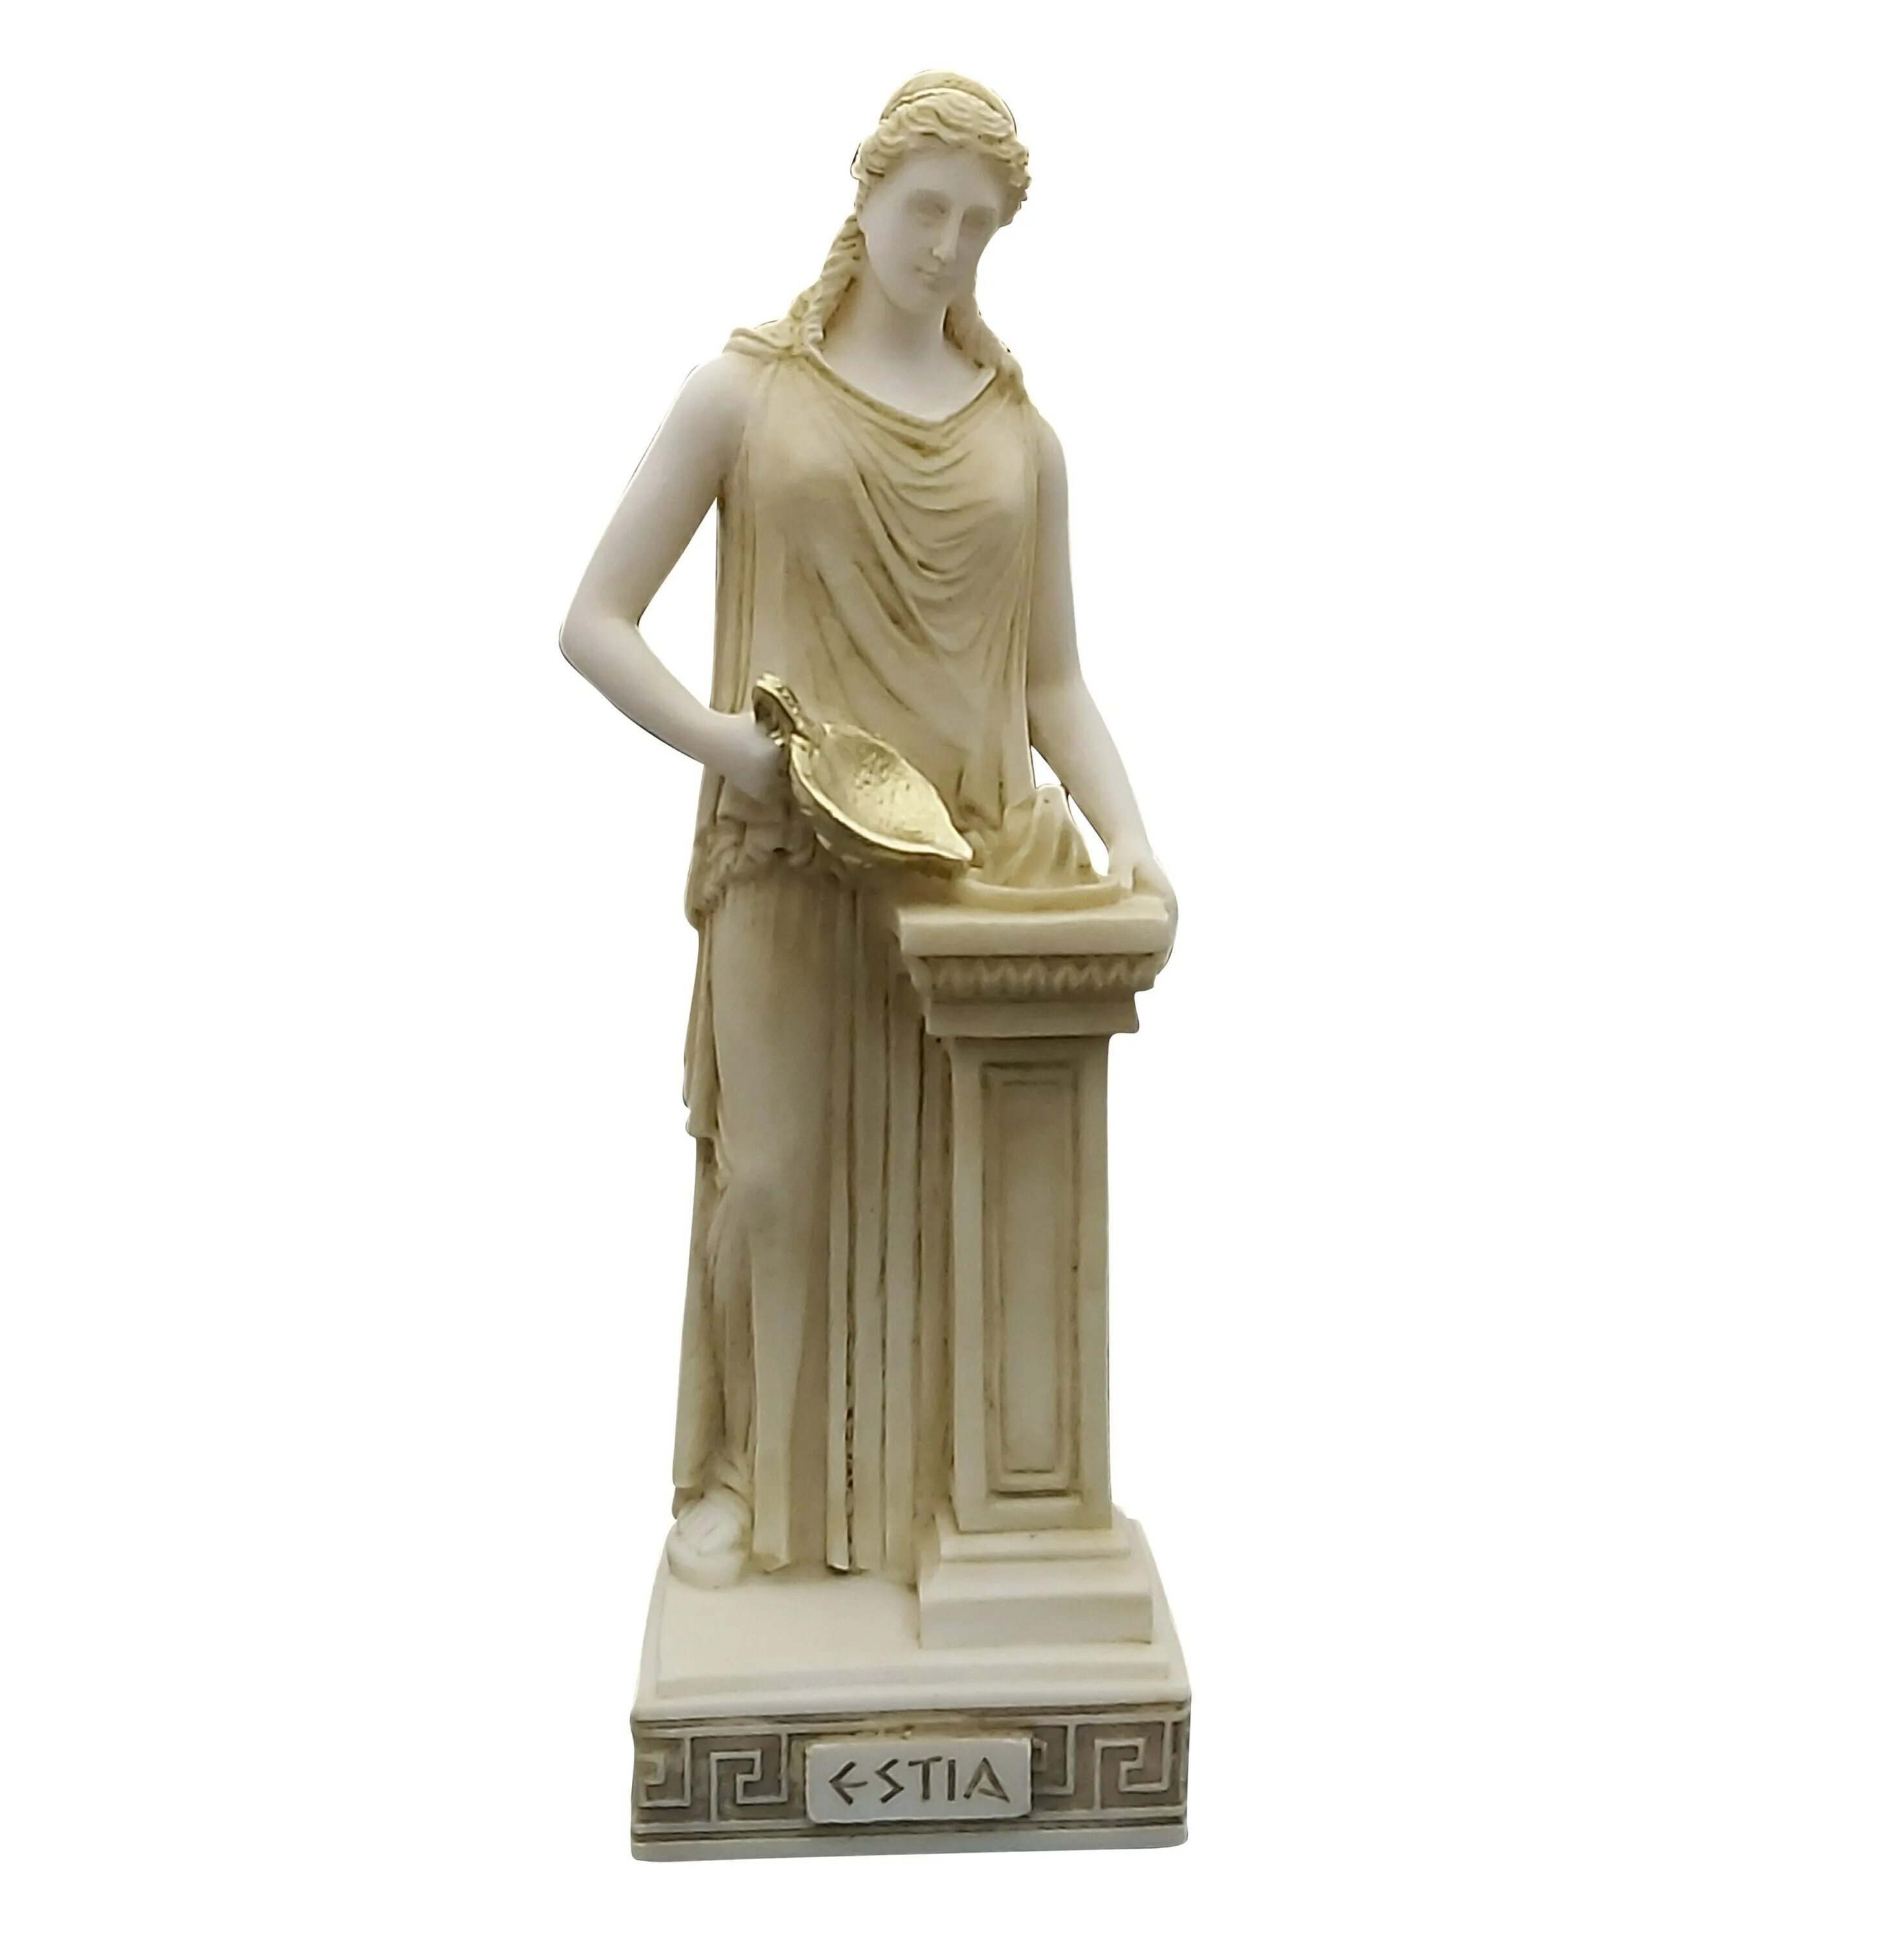 Гестия богиня статуя. Греческая богиня Гестия. Как называется жриц богини весты